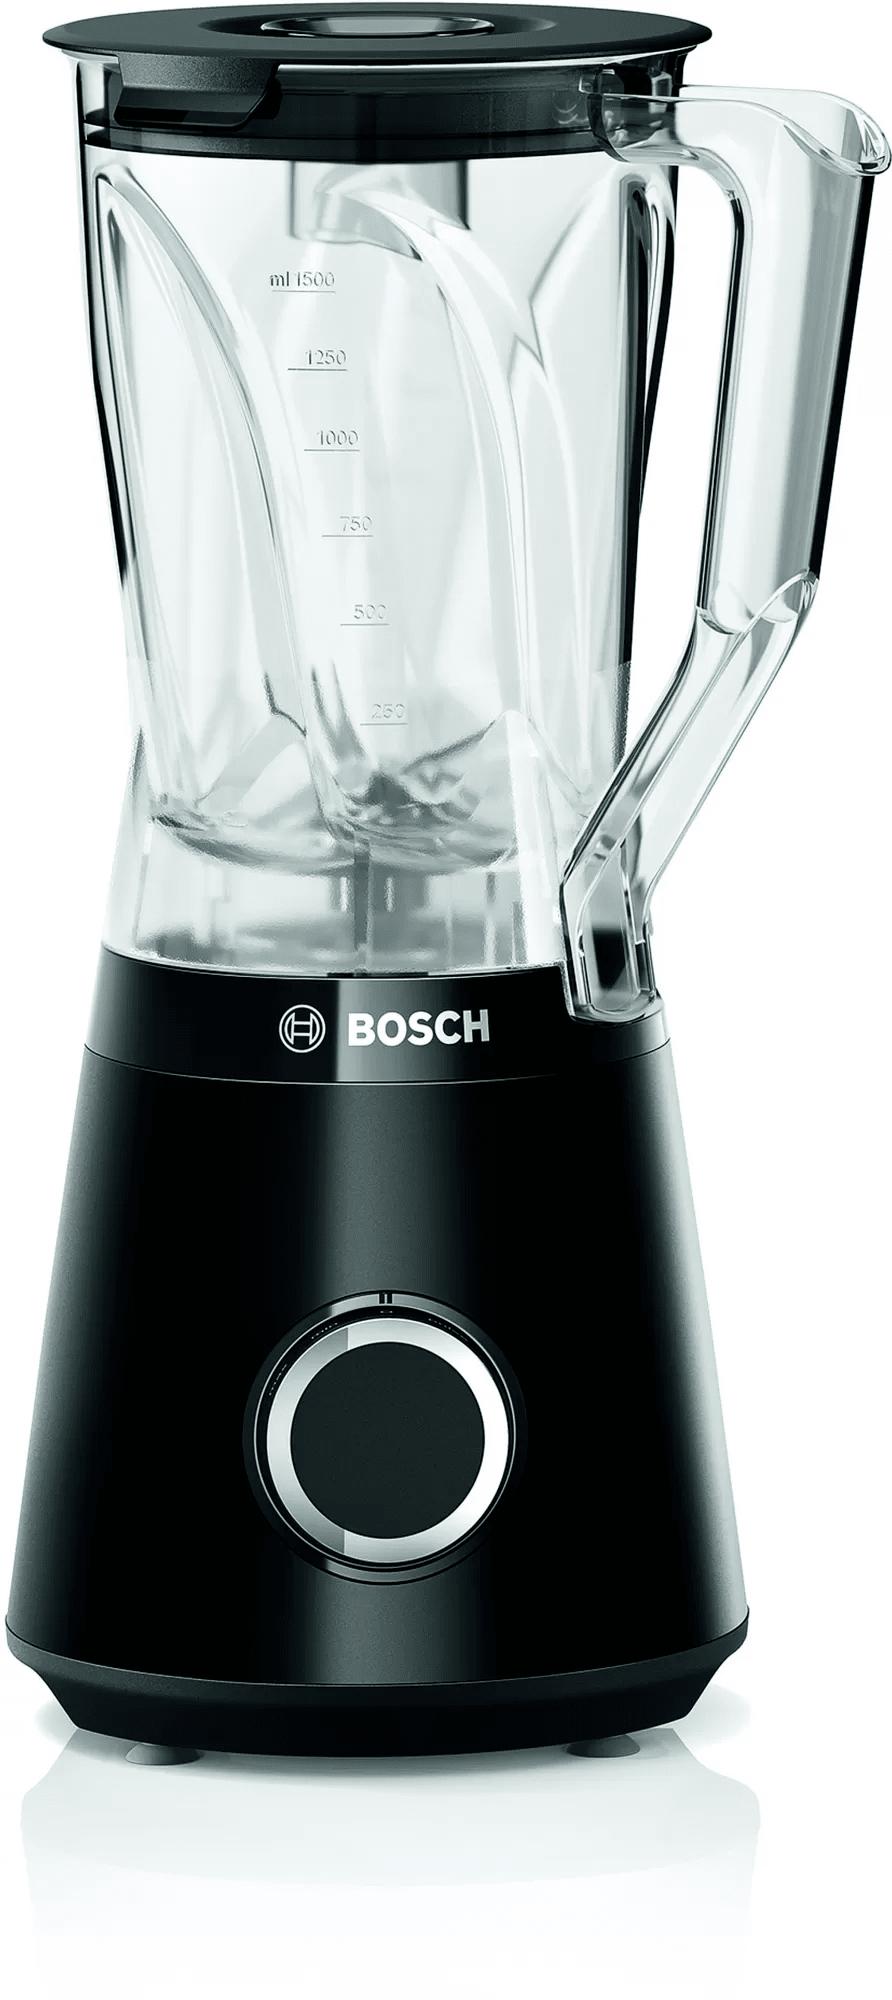 Bosch MMB6141B Blender, 1200 W, Crni